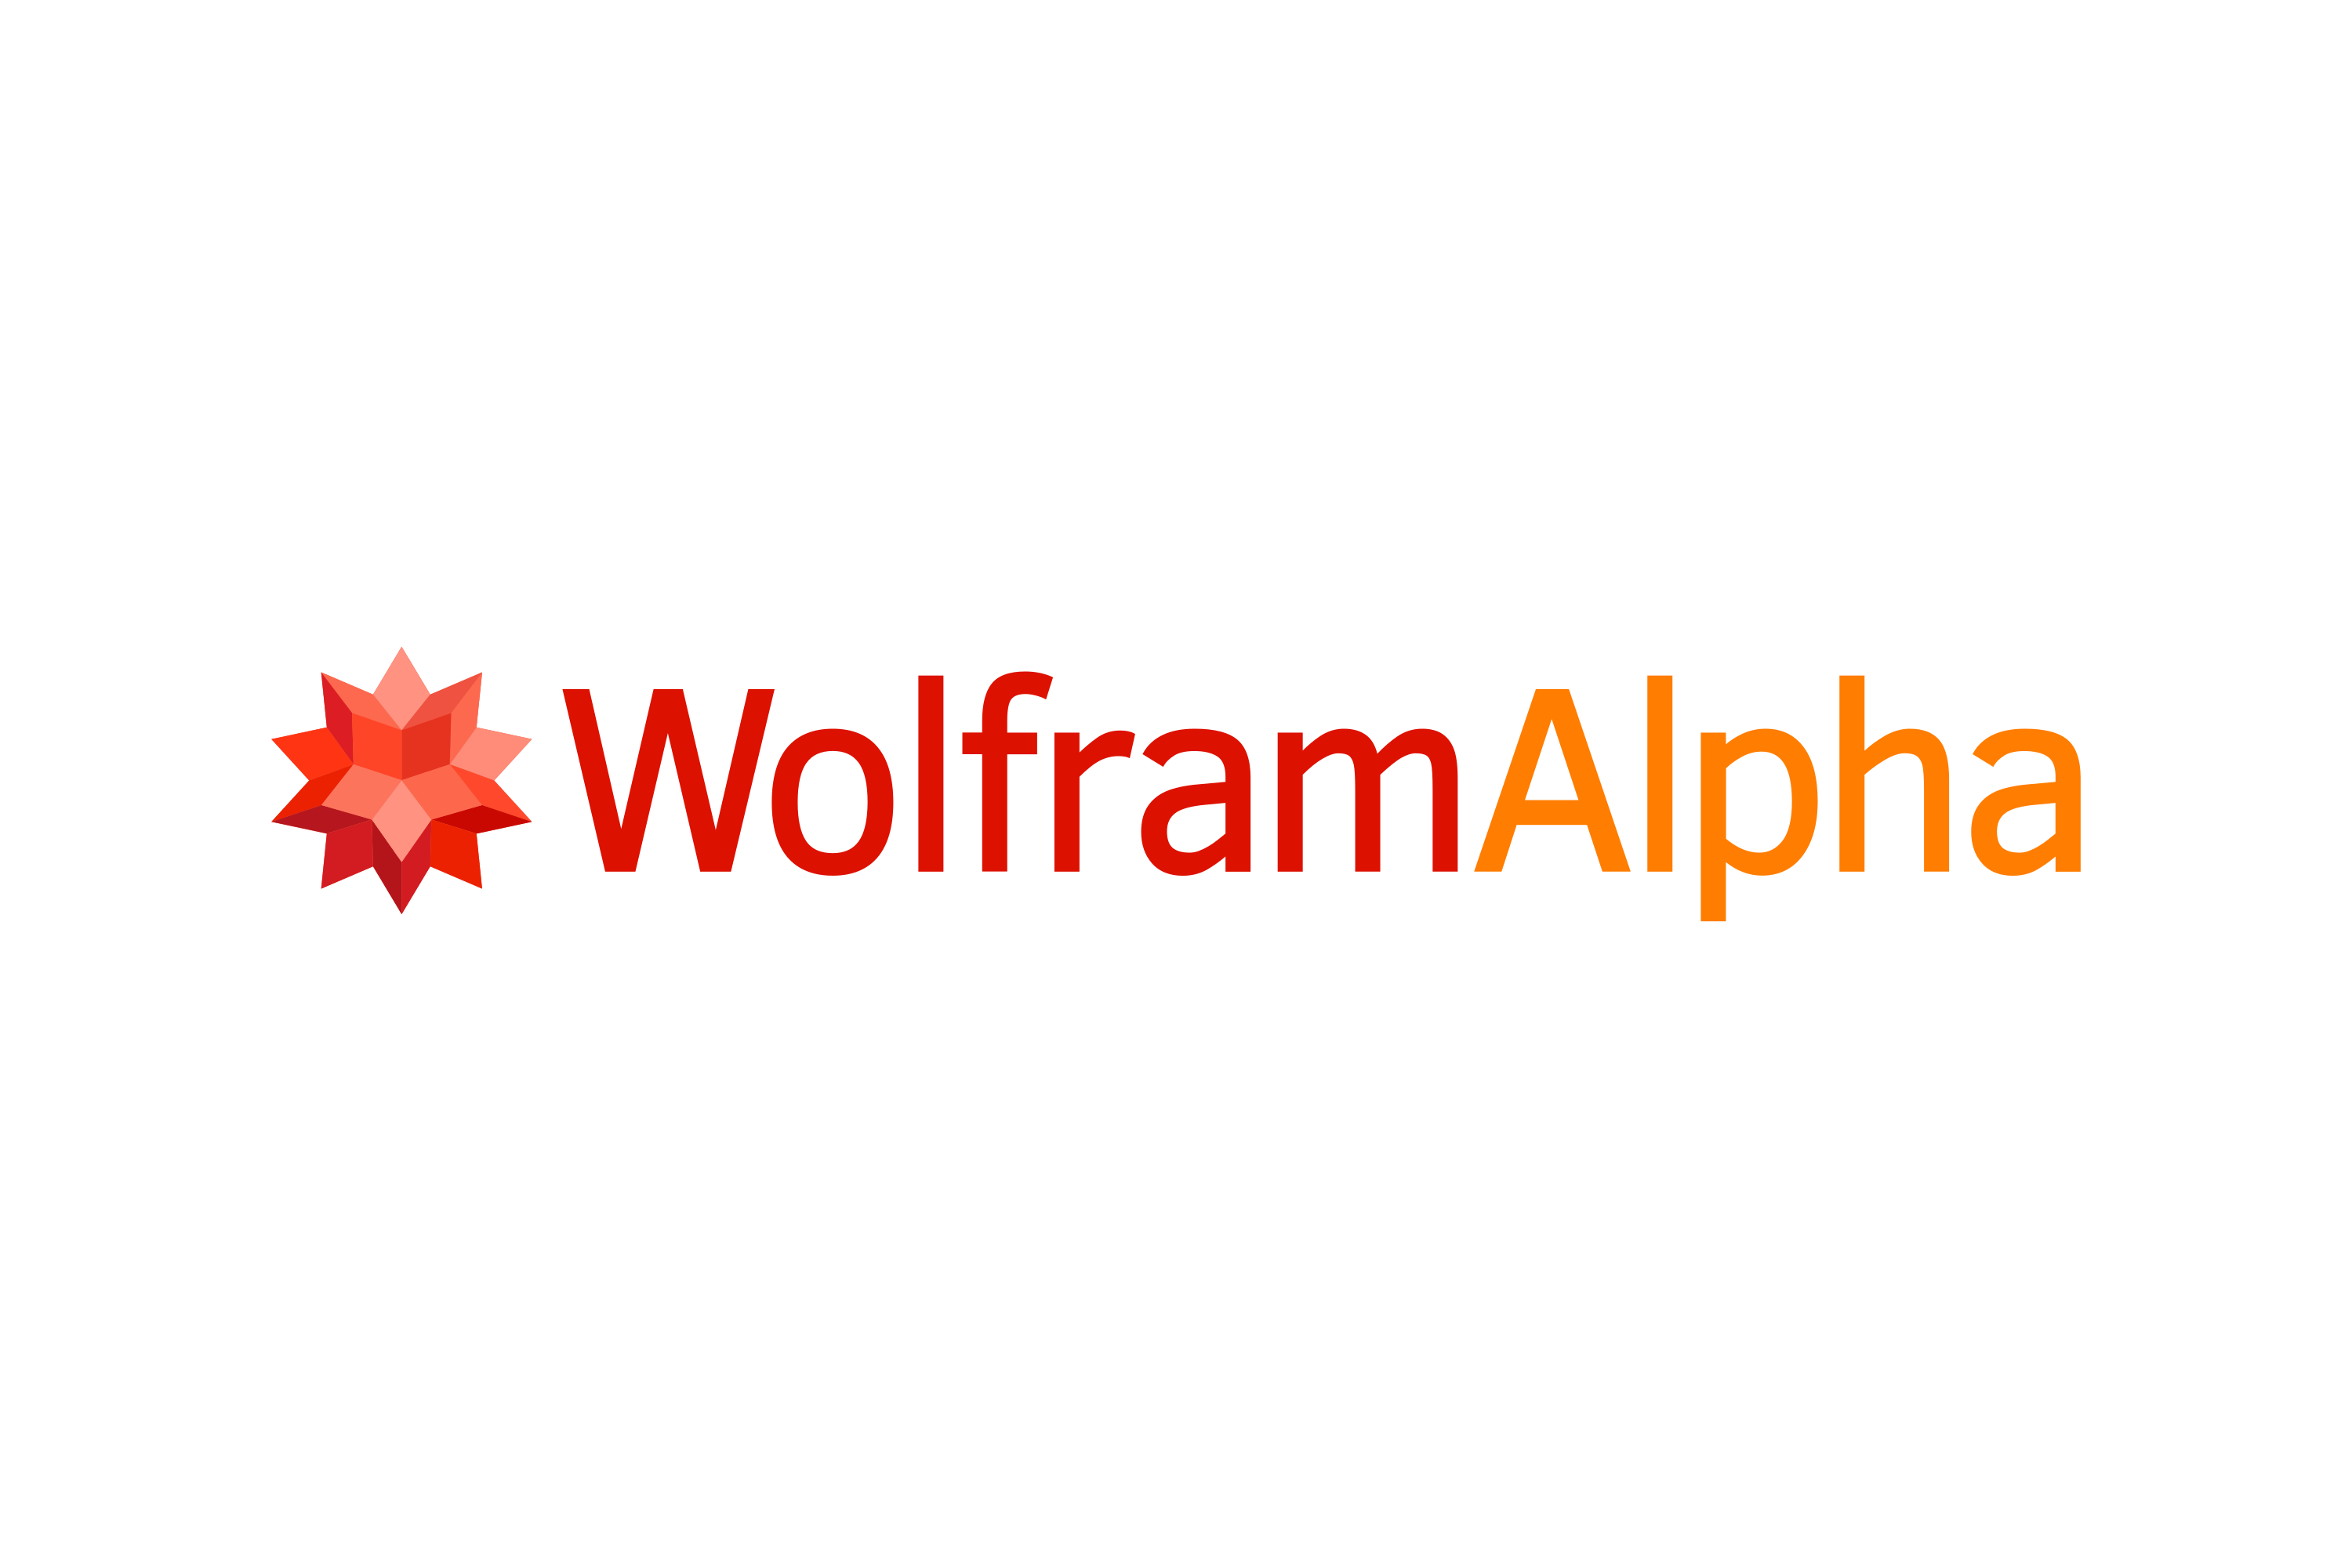 Download Wolfram Alpha Logo in SVG Vector or PNG File Format - Logo.wine